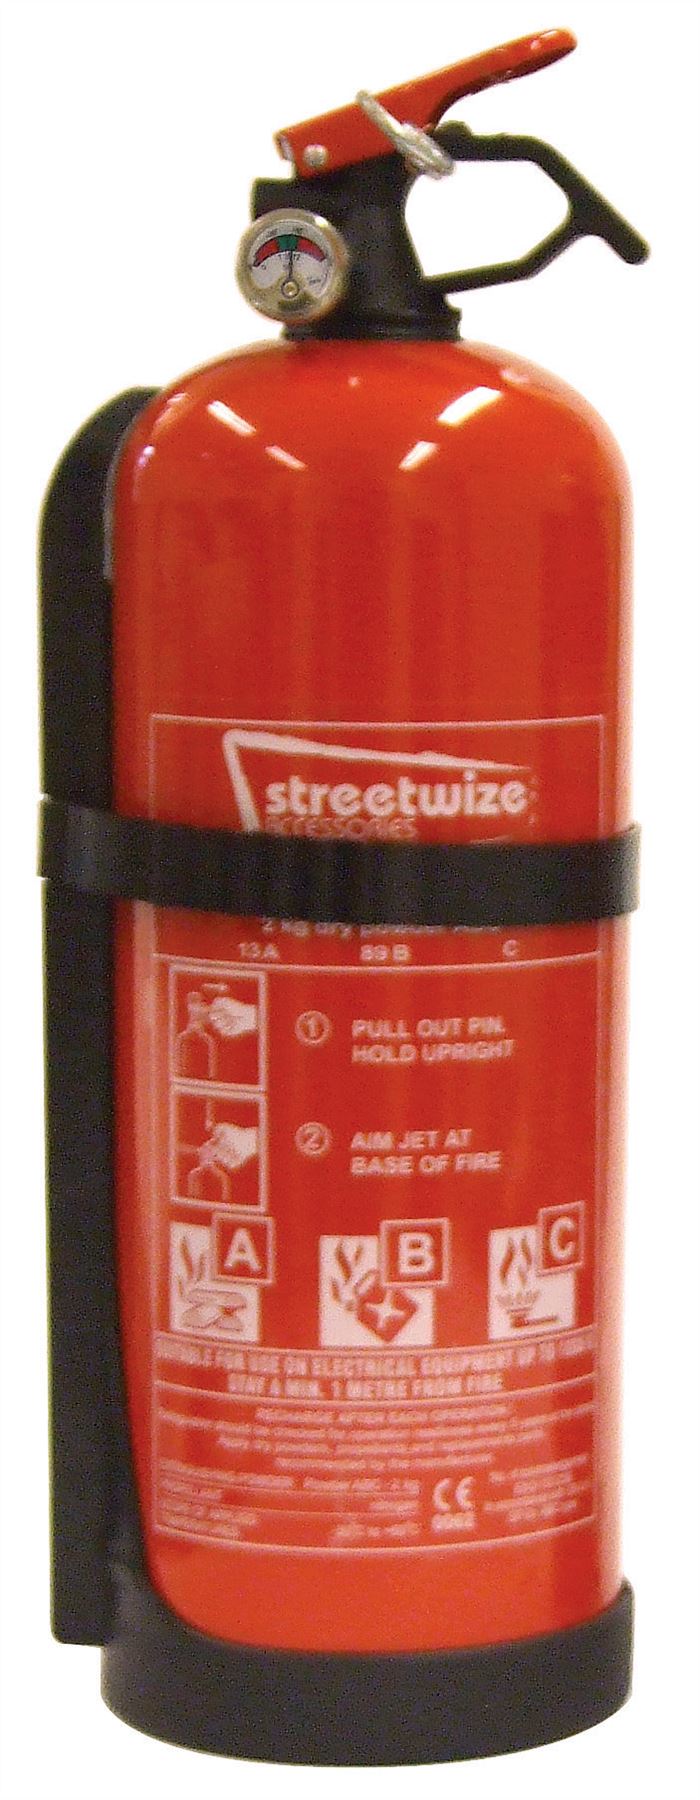 Streetwize 2 kg Dry Powder ABC+ Gauge Fire Extinguisher